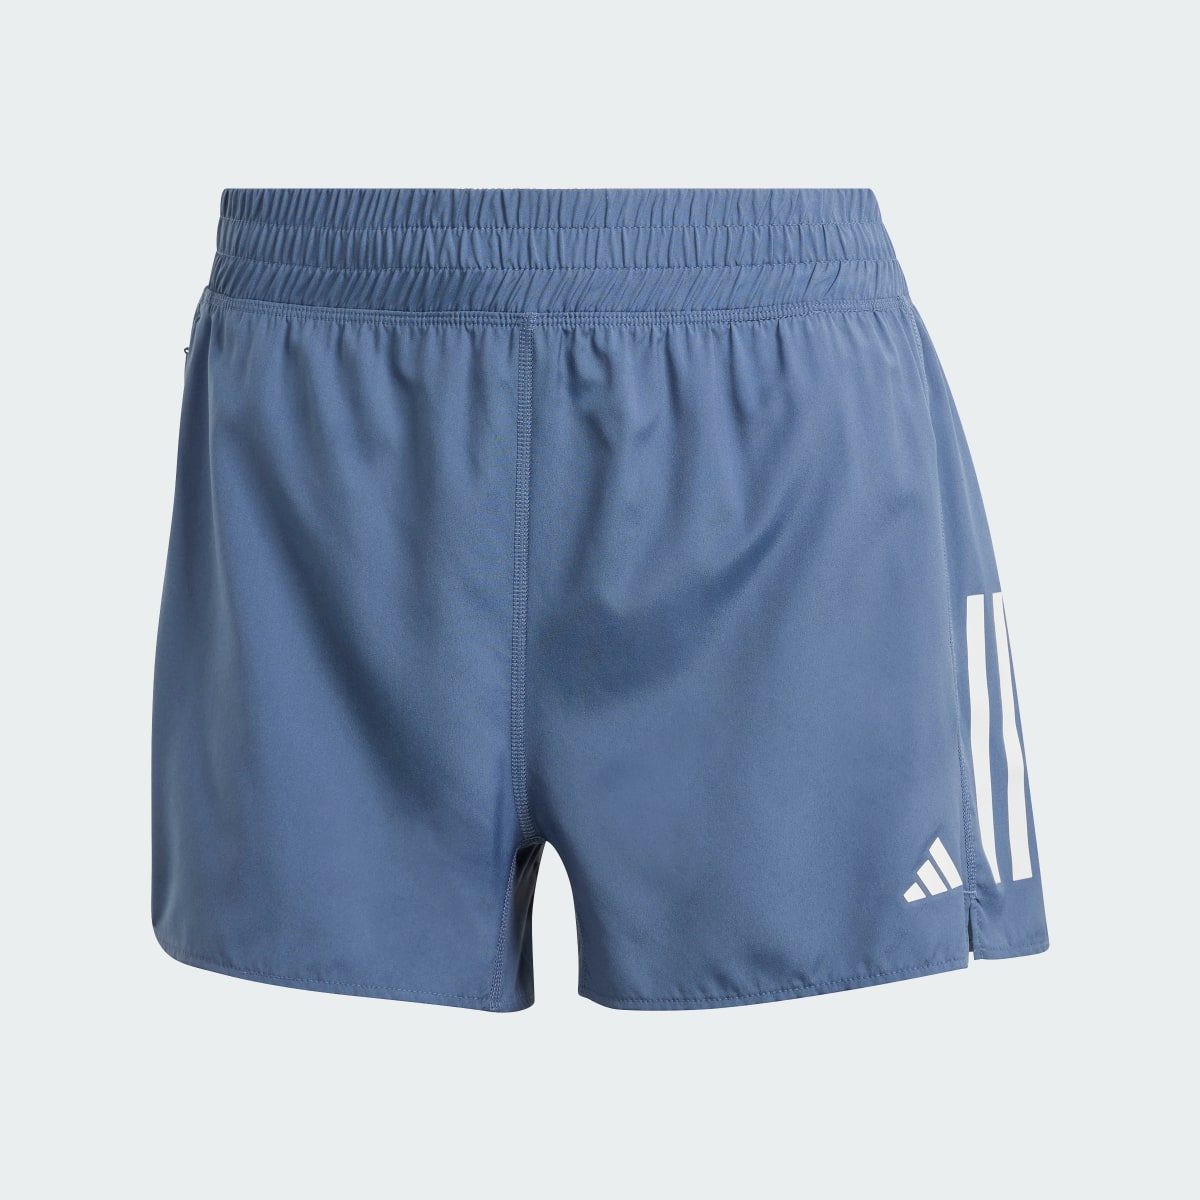 Adidas Own the Run Shorts. 4